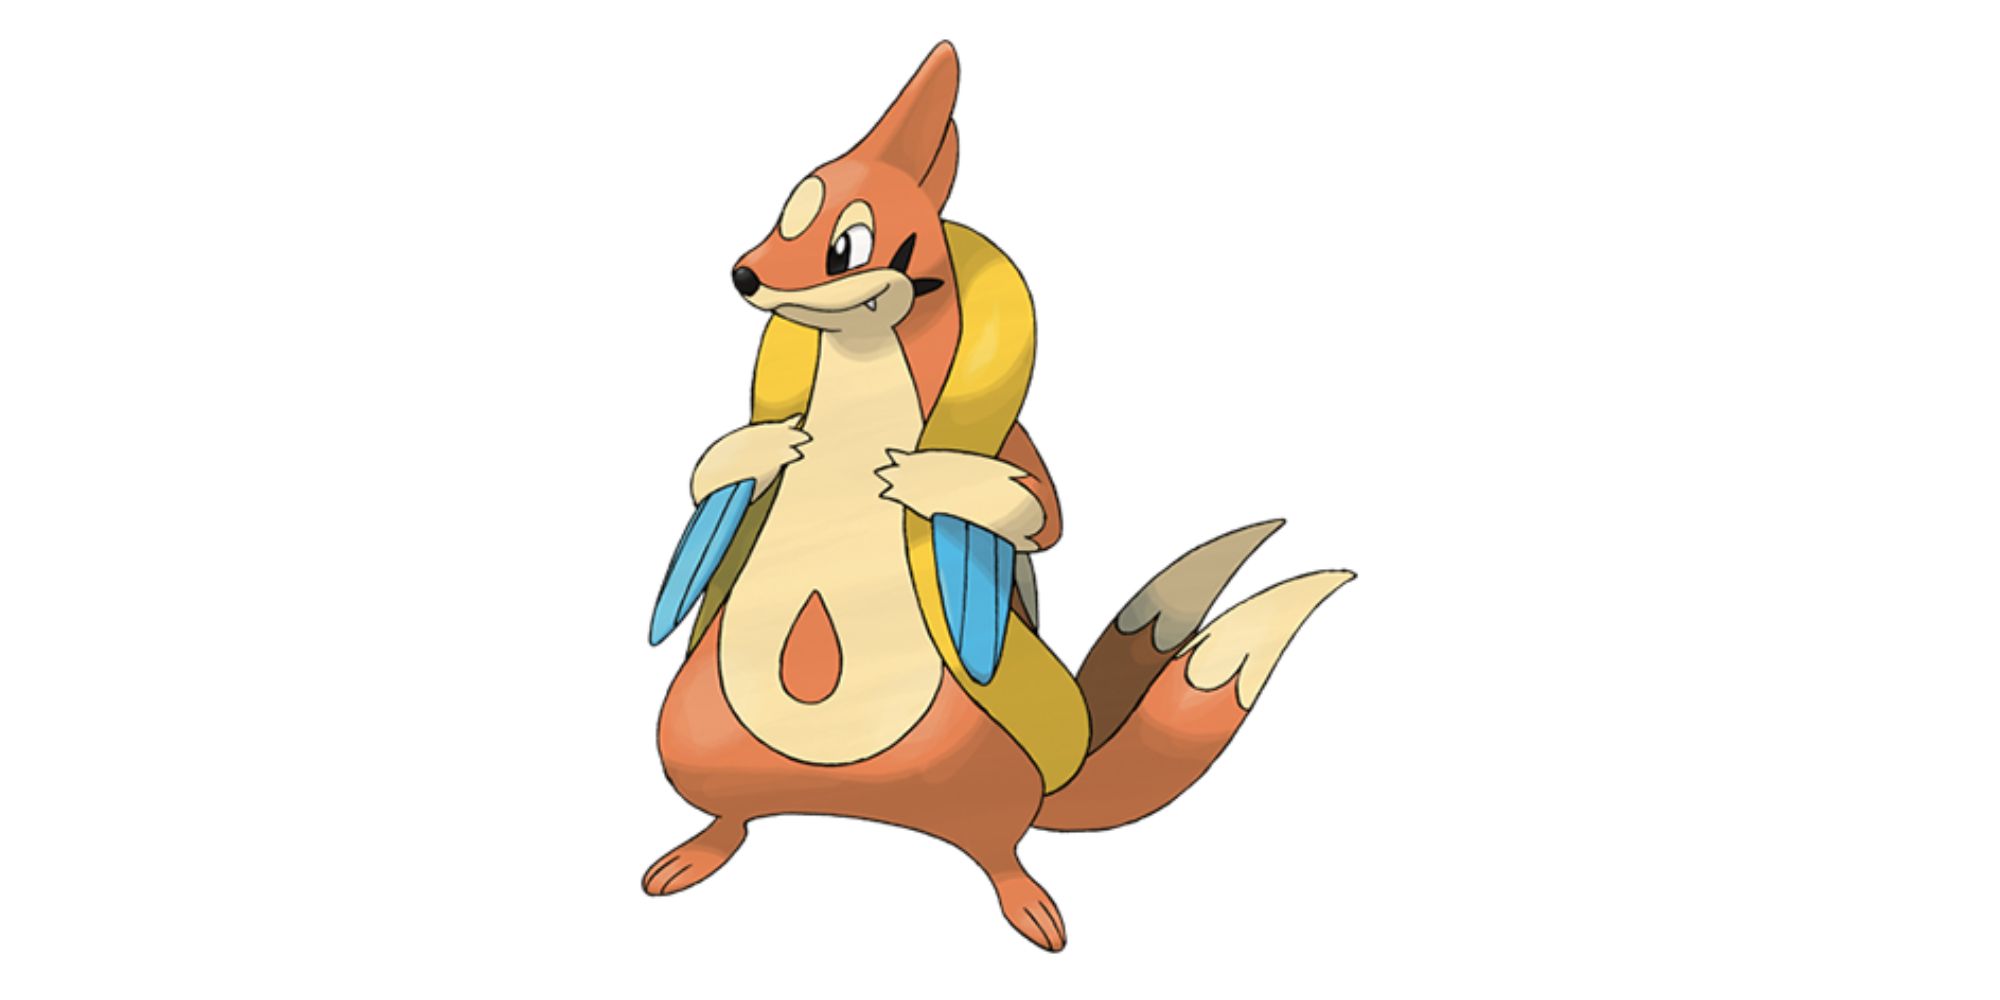 Самый сложный покемон, которого можно найти в Pokémon GO — Floatzel — Покемон водного типа носит плавучий мешок, когда атакует свою добычу.